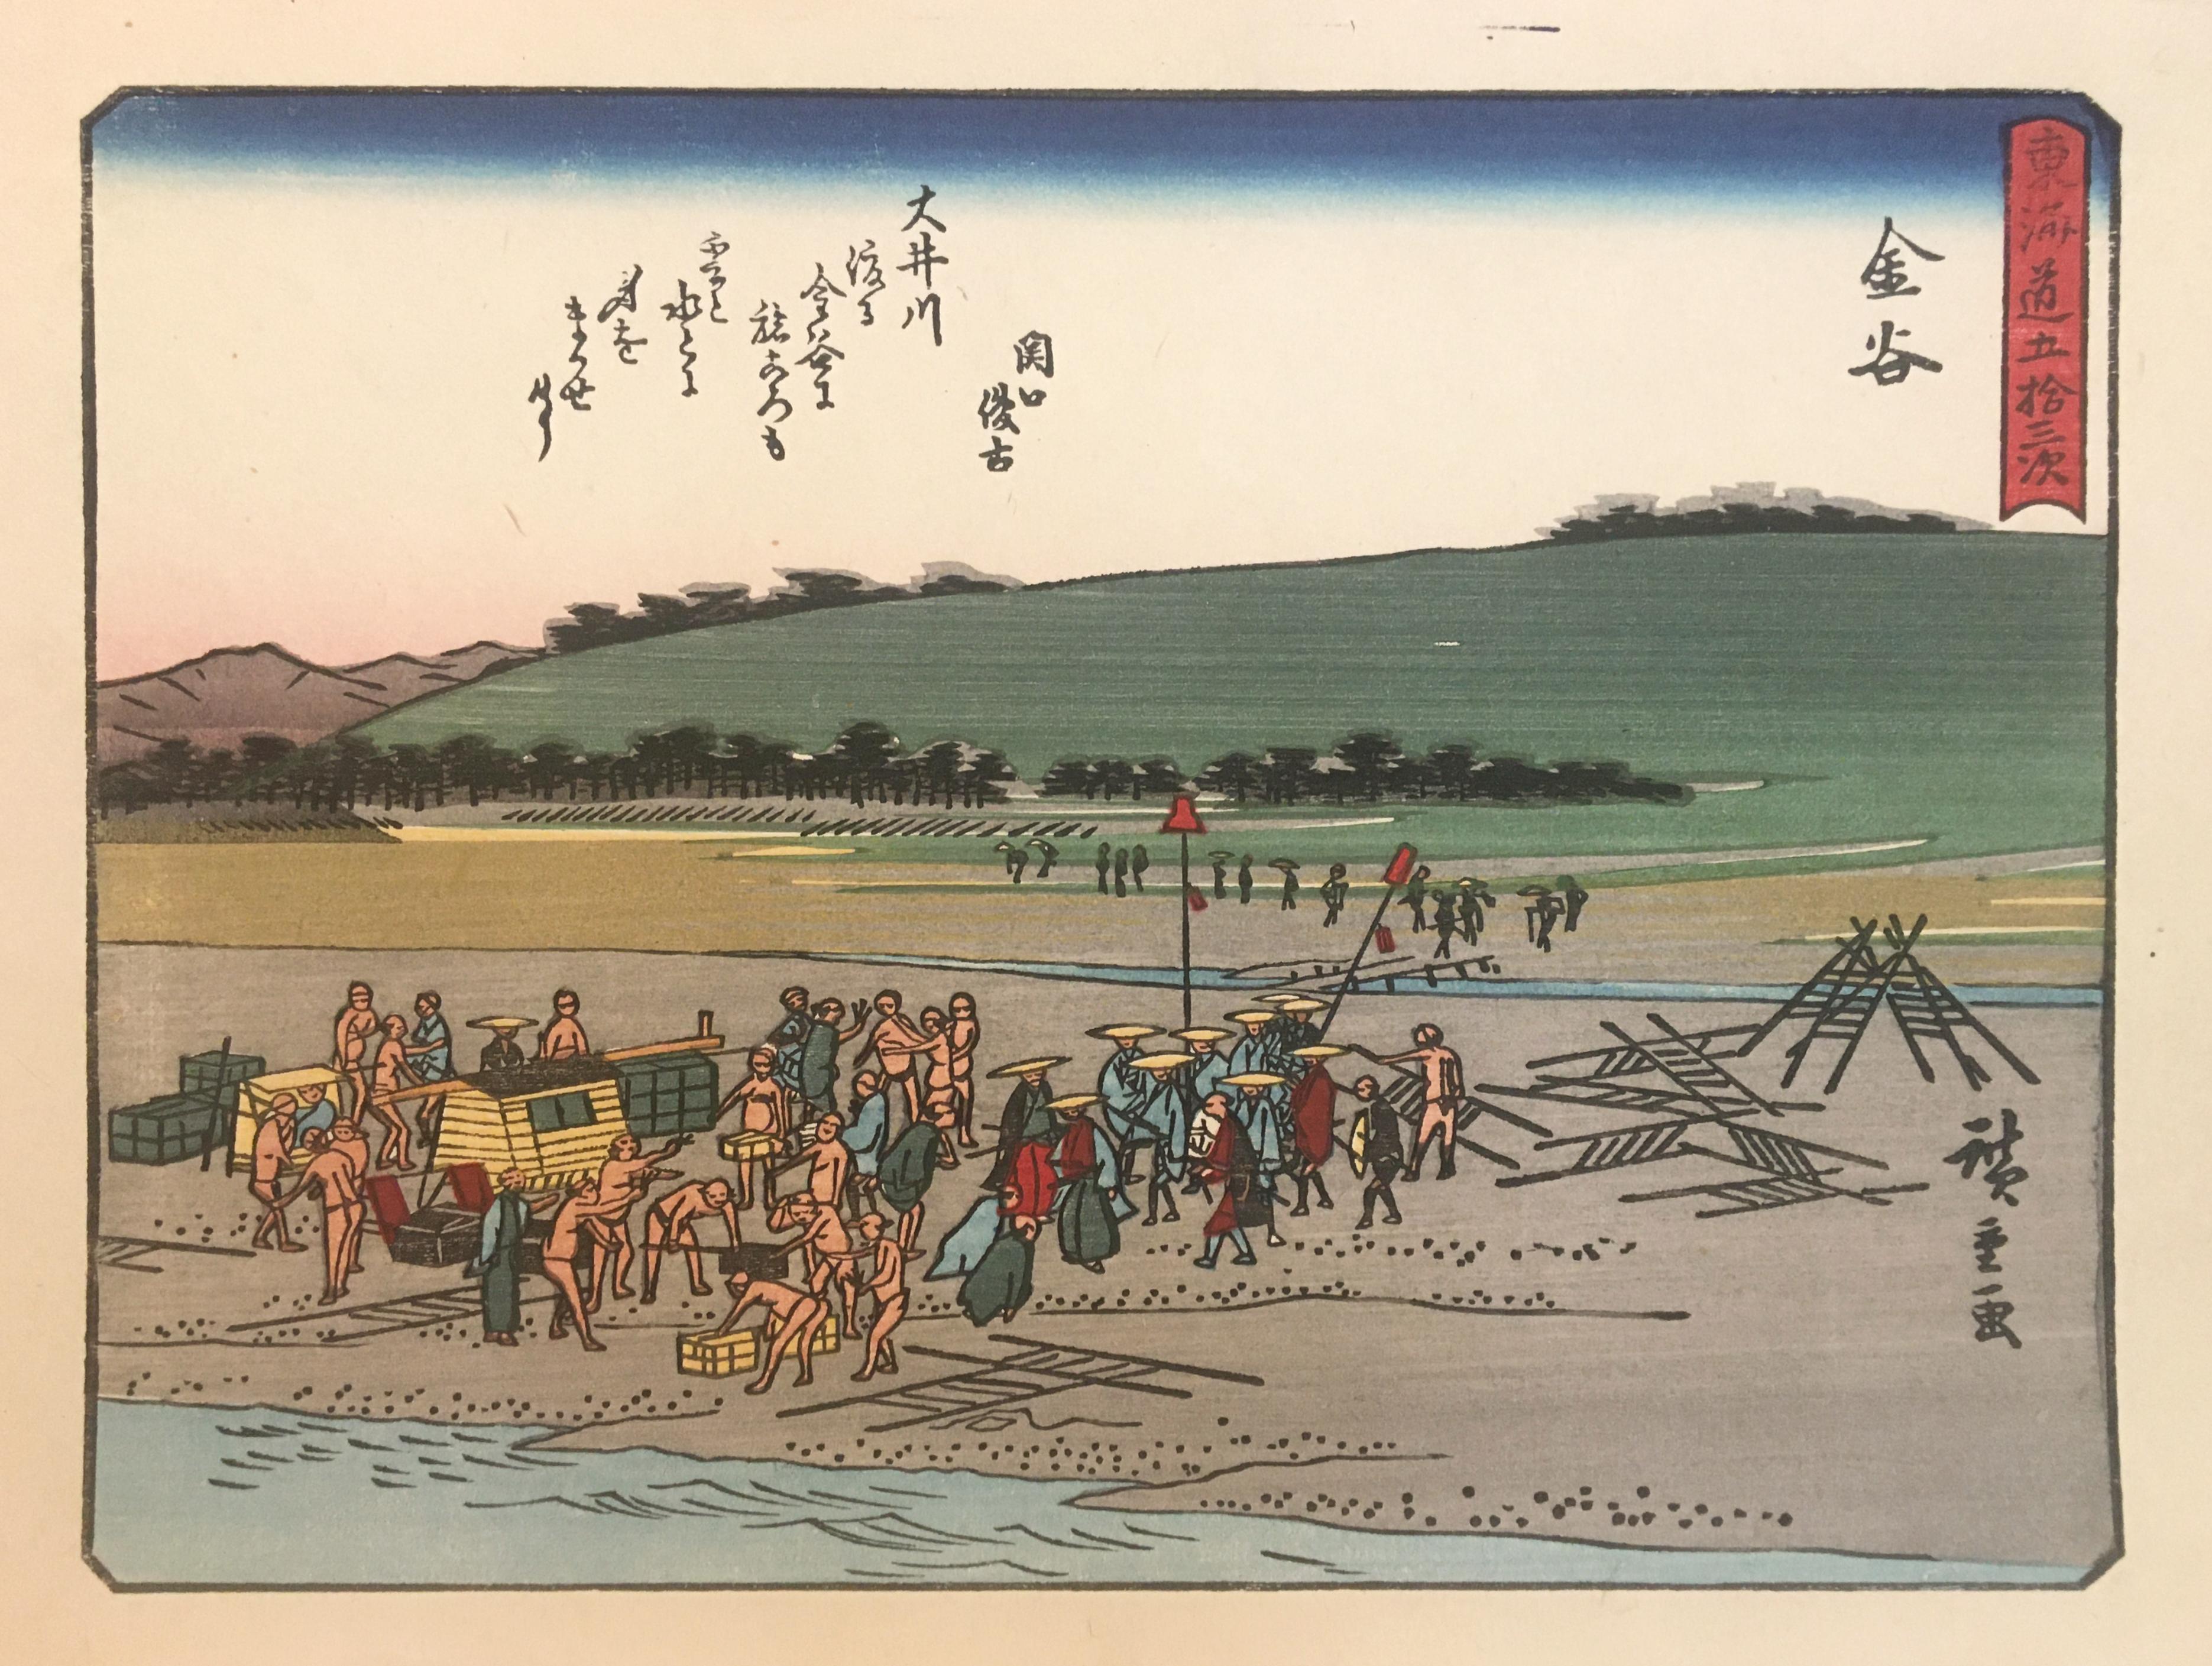 „ Travelers at Kanaya“, nach Utagawa Hiroshige, Ukiyo-E Holzschnitt, Tokaido, Edo